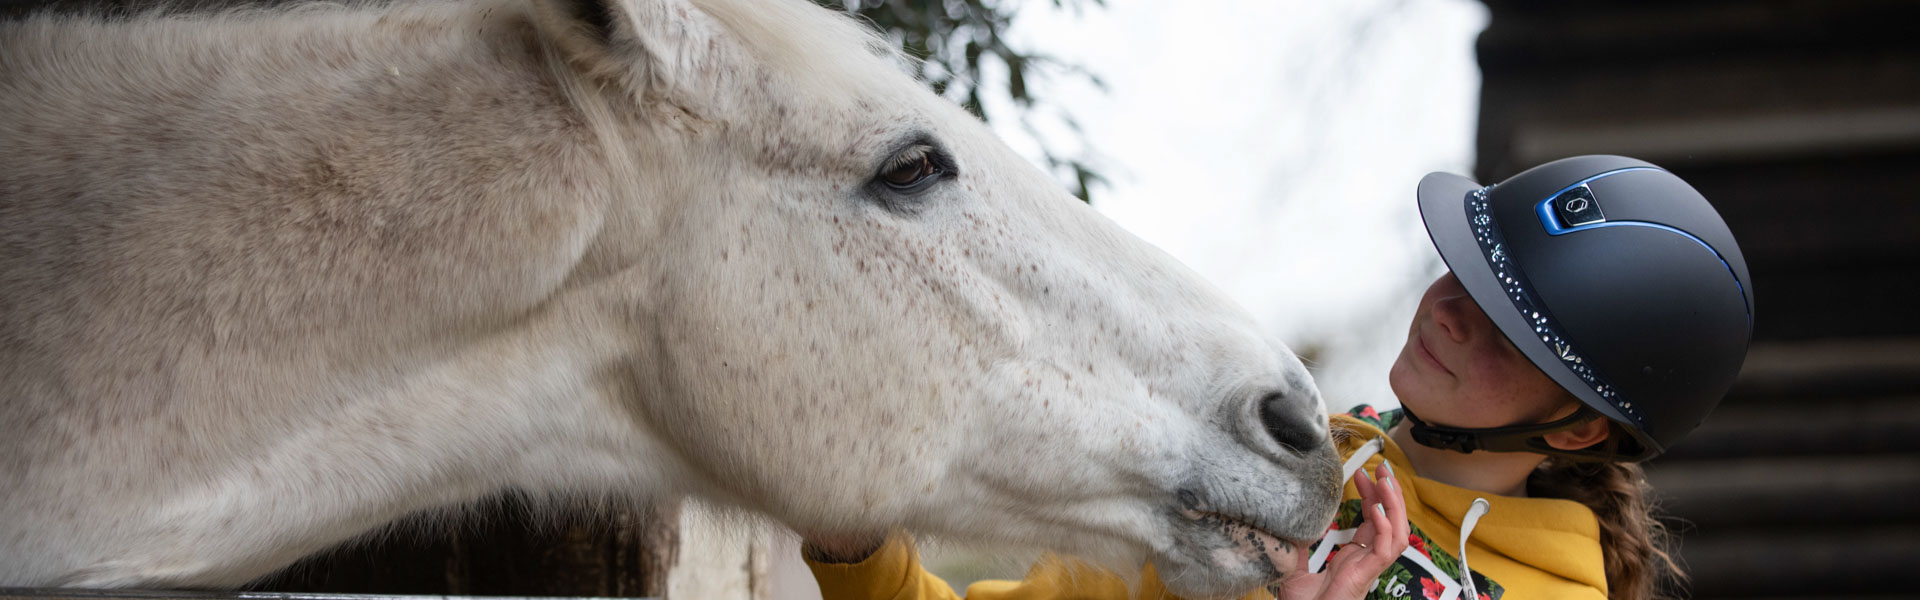 rapport cavalier cheval relation animal bien-être respect couple soumission